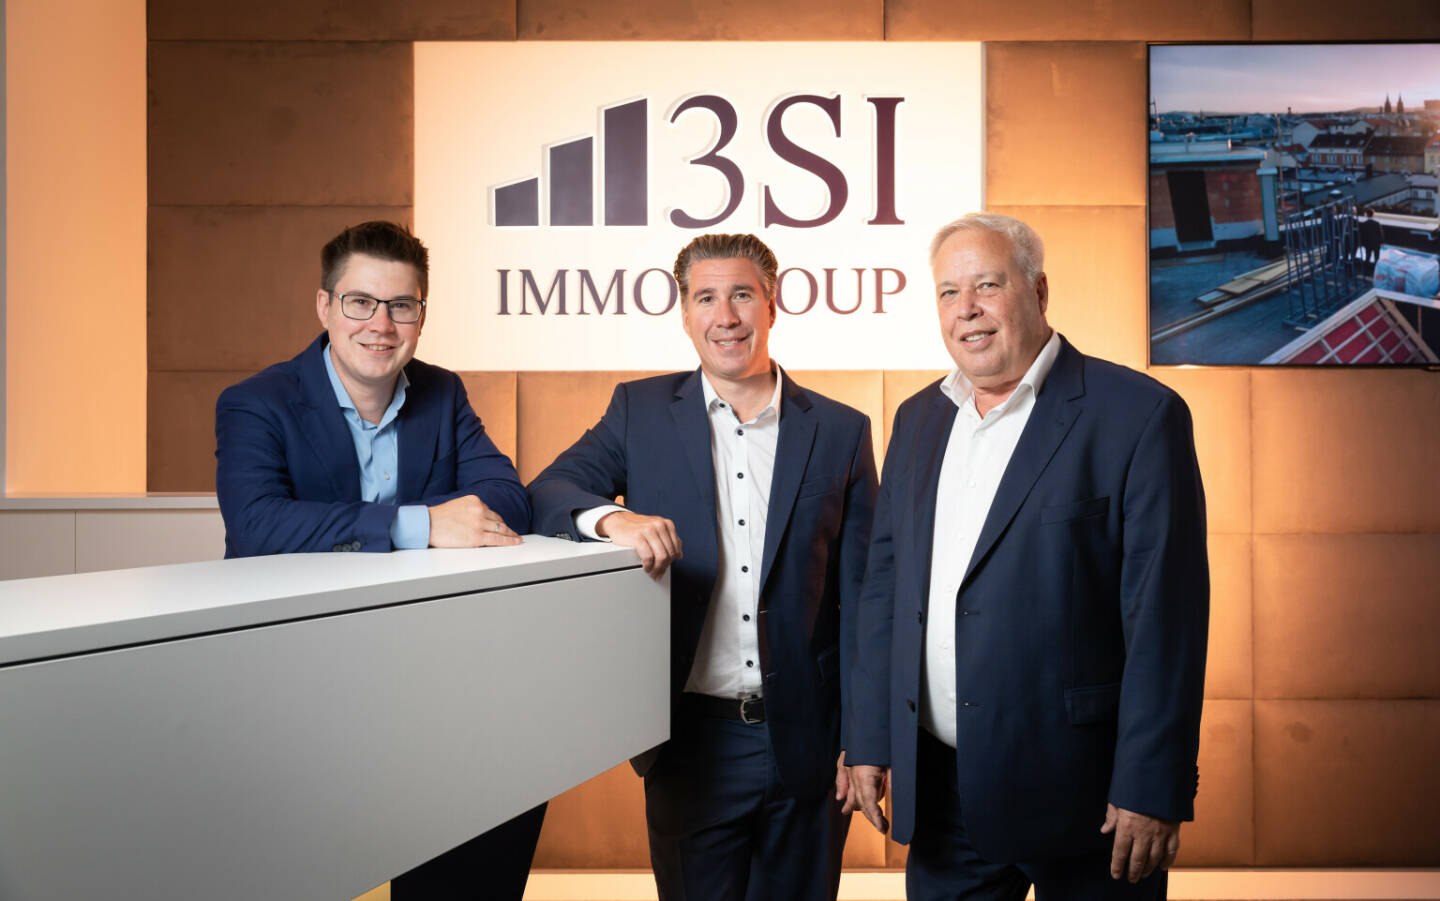 3SI Immogroup: 3SI Immogroup: Kraftvoller neuer Markenauftritt in Nachtblau, Claus, Michael und Harald Schmidt freuen sich über den gelungenen neuen Markenauftritt. Fotocredit:3SI Immogroup | Jana Madzigon